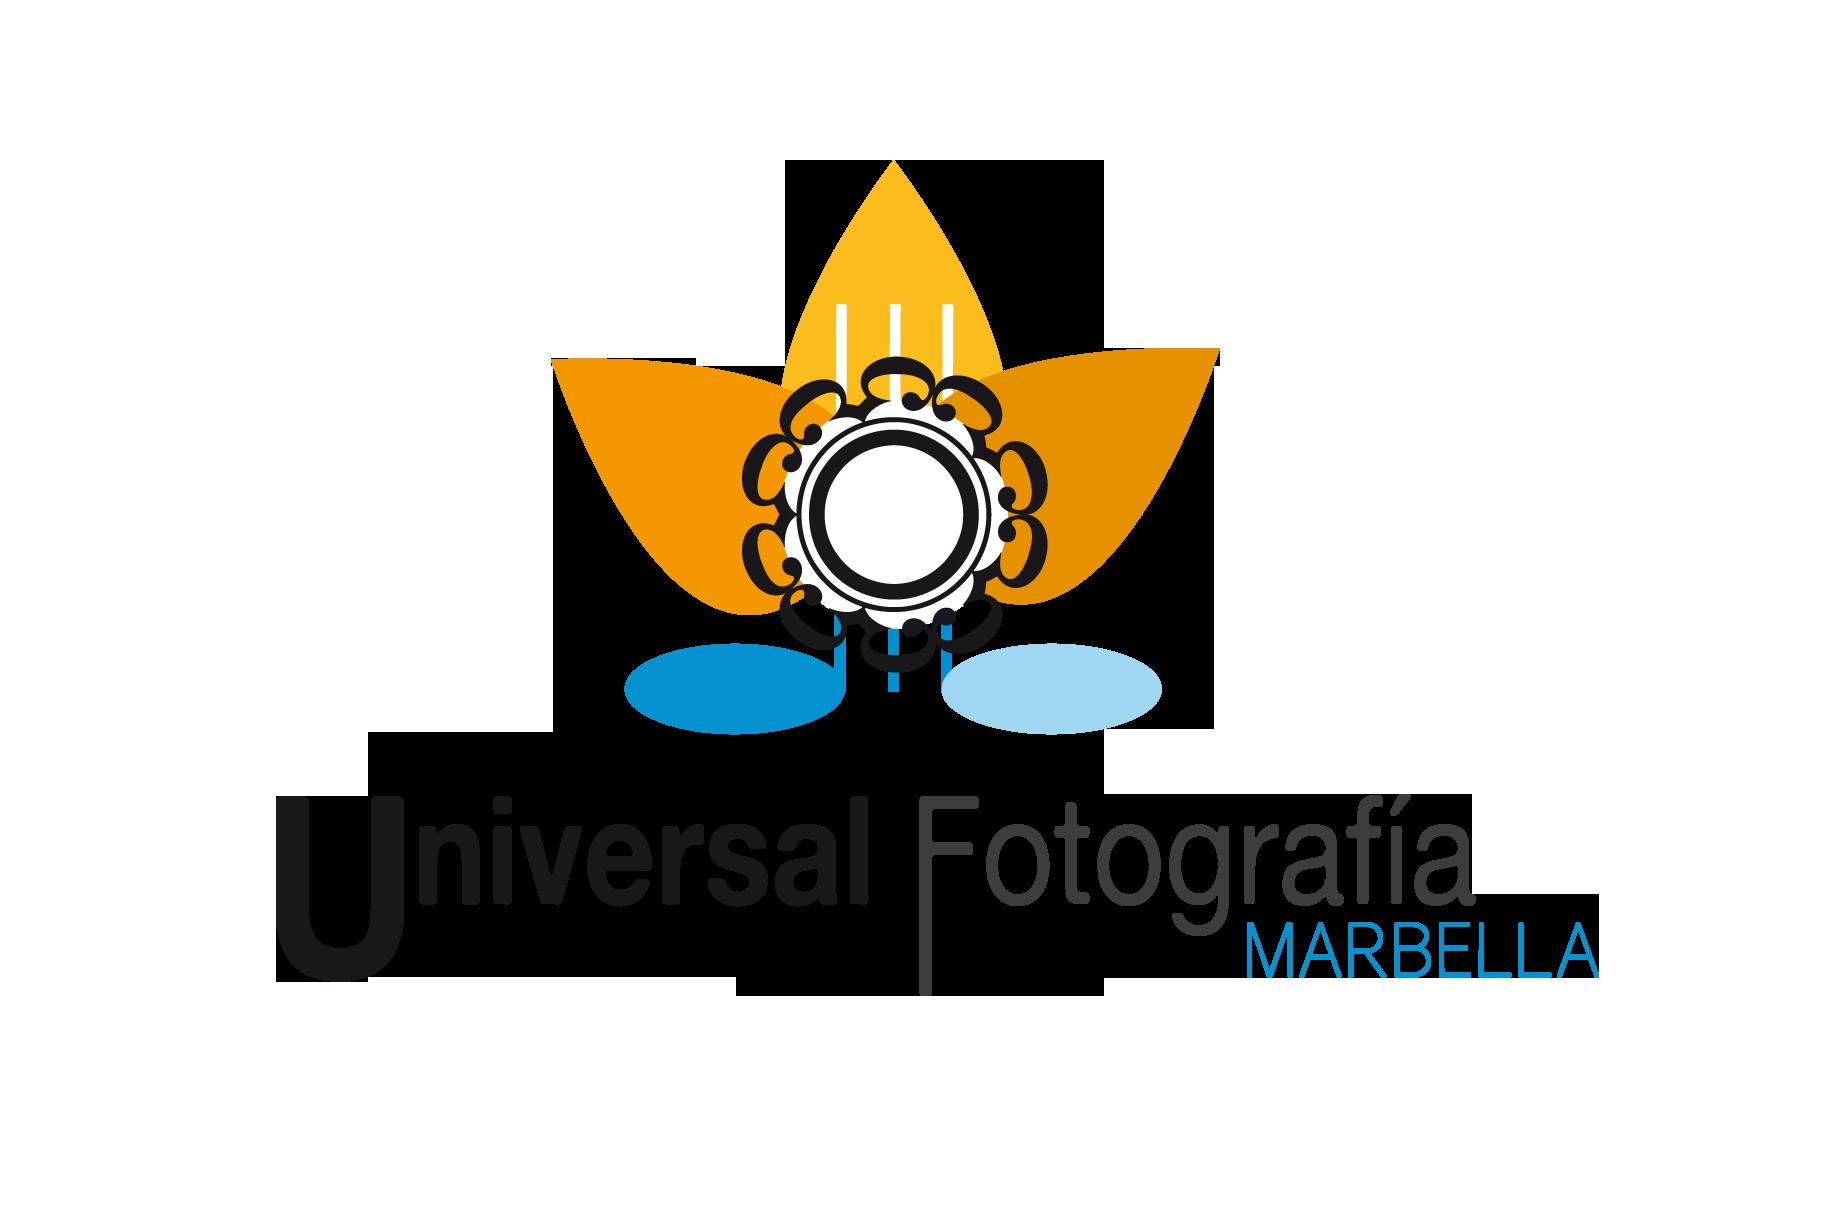 UNIVERSAL FOTOGRAFIA MARBELLA